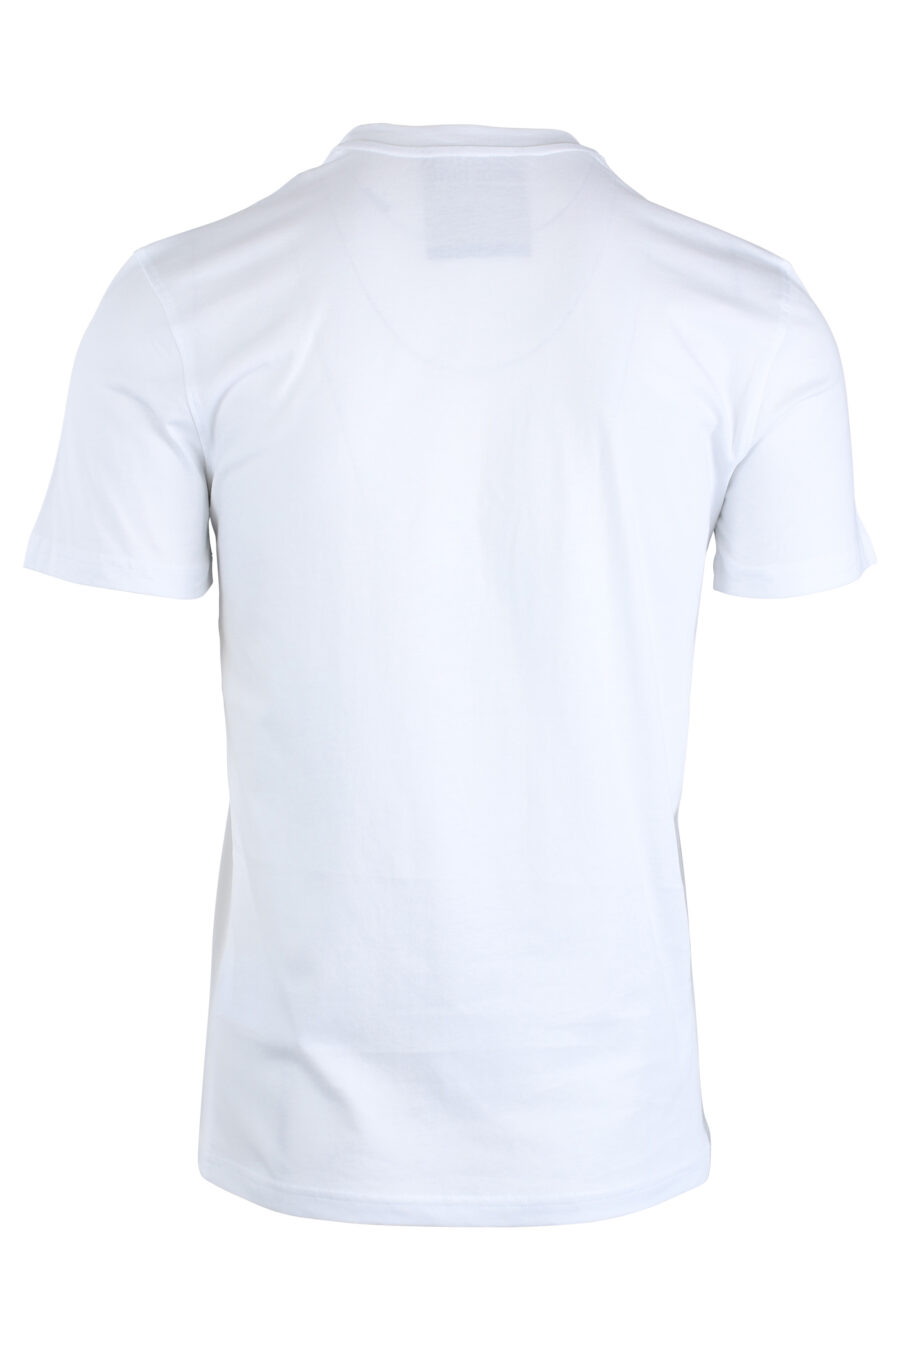 T-shirt branca com logótipo de riscas pretas - IMG 1687